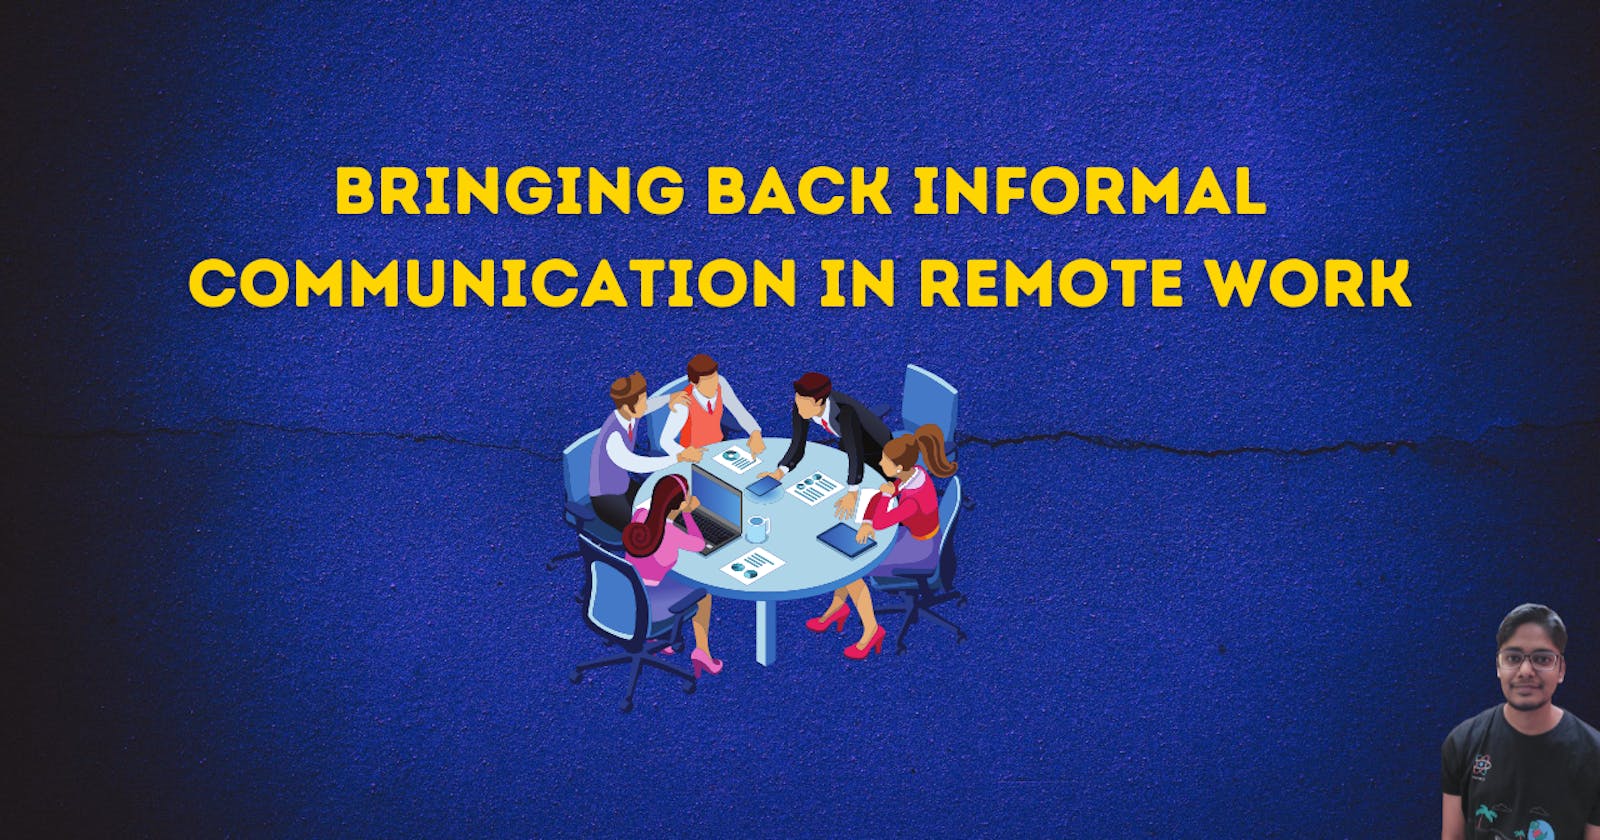 Bringing back informal communication in remote work